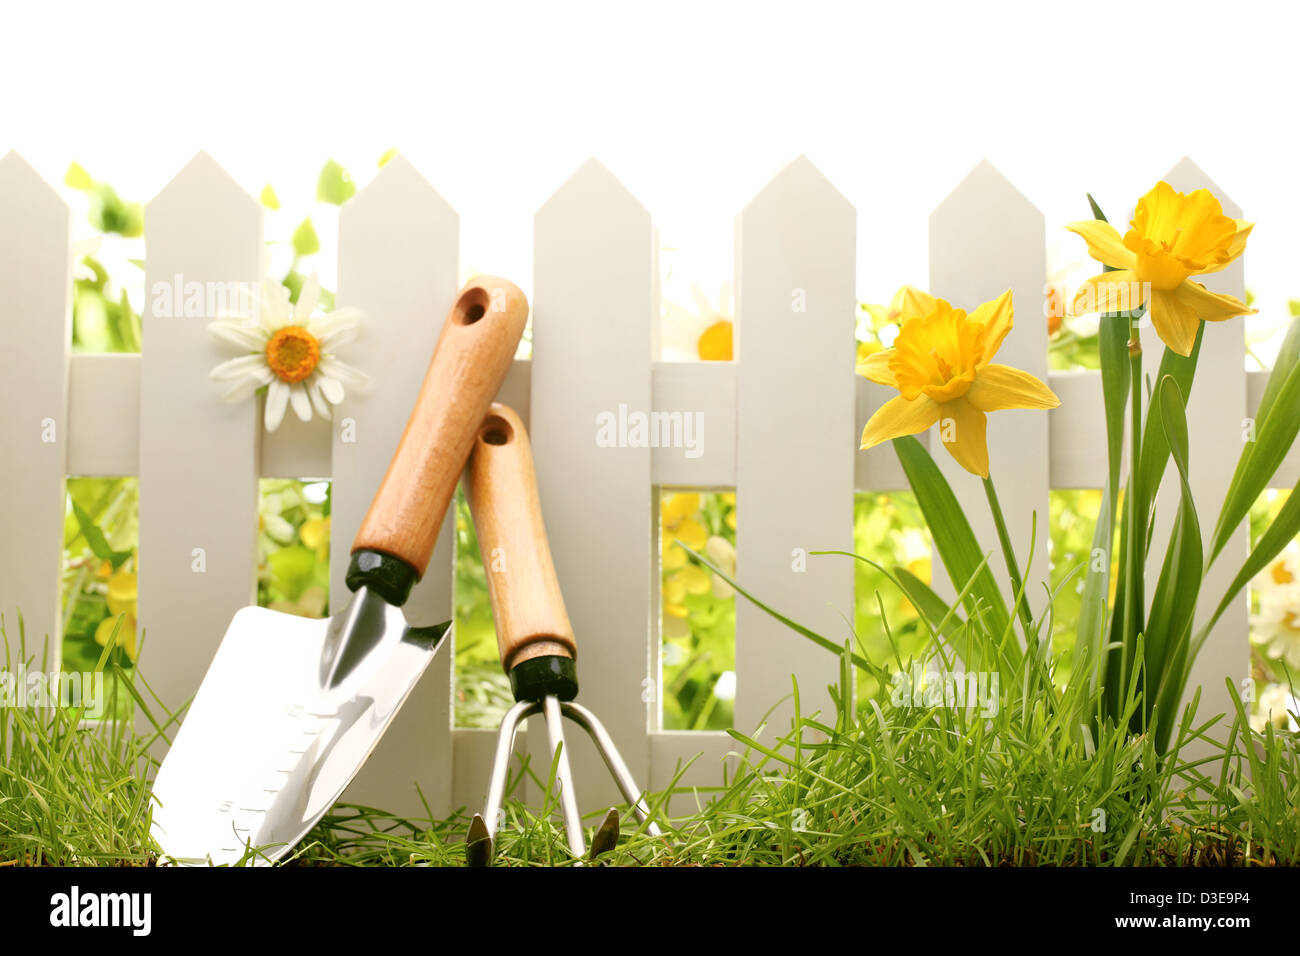 Recinzione in bianco con attrezzi da giardino,l'erba verde e fiori daffodil. Foto Stock